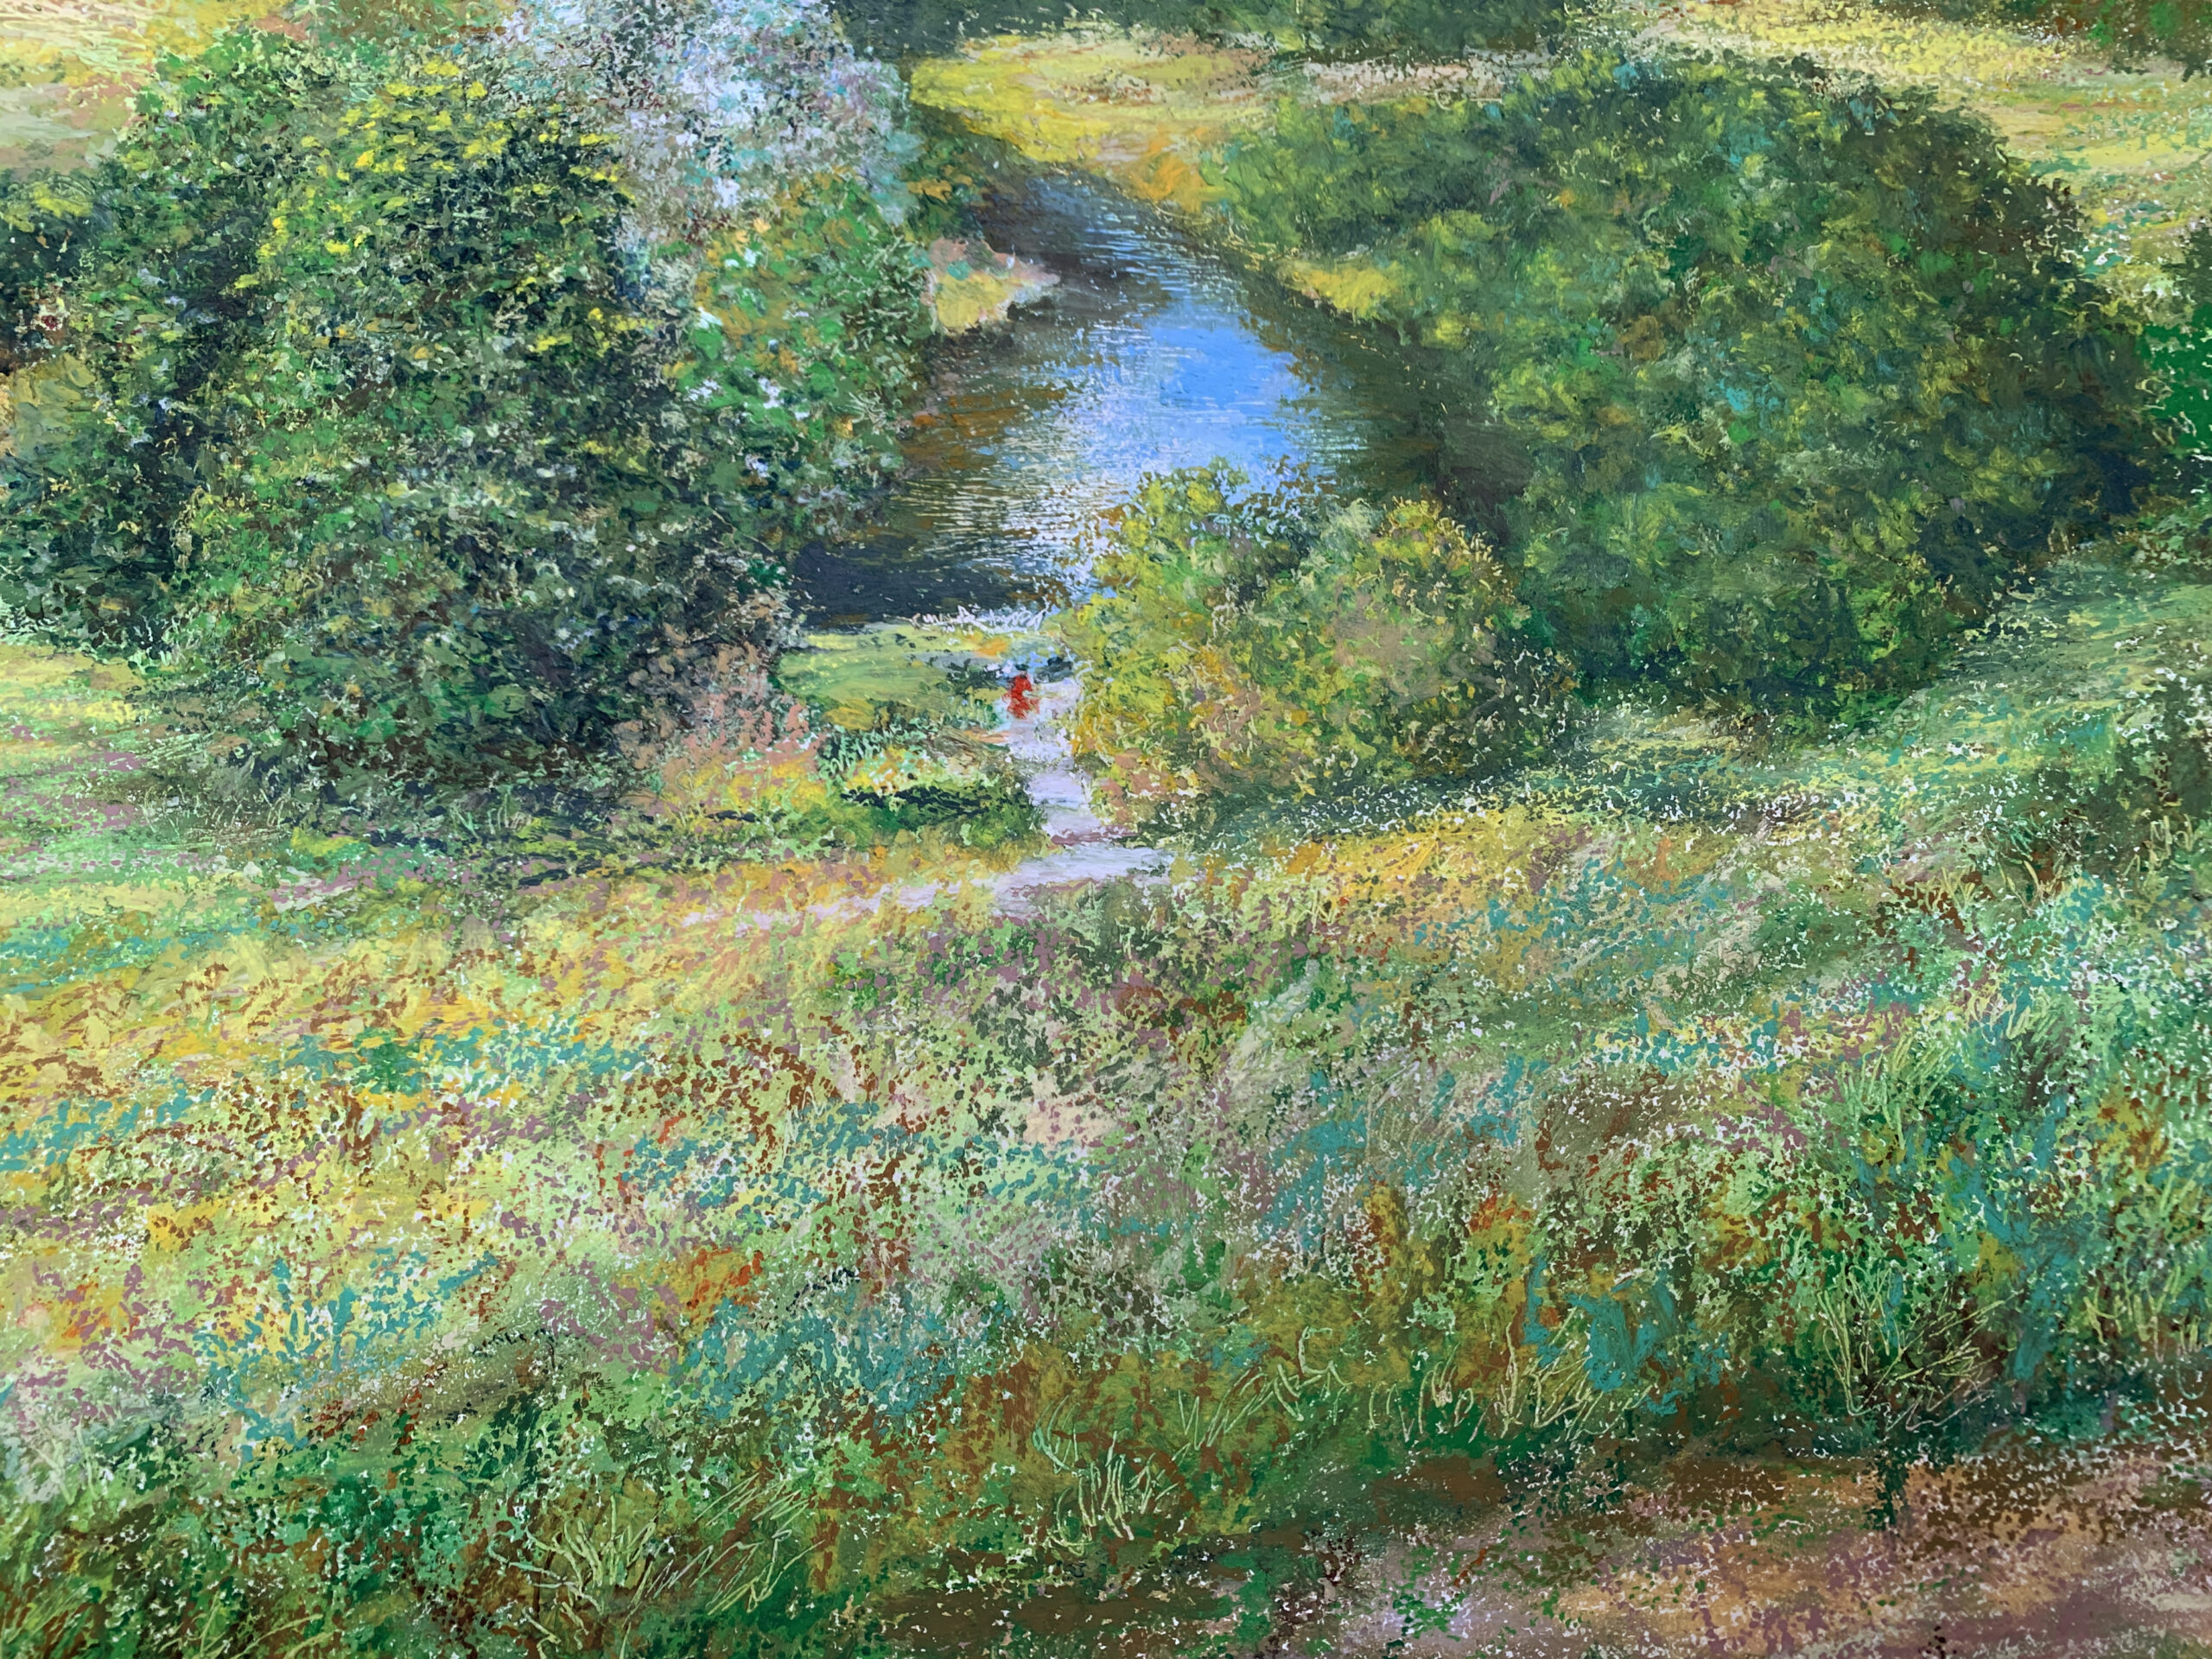 Река Протва деревня Ермолино картина пейзажи природы масляная пастель художник Альберт Сафиуллин